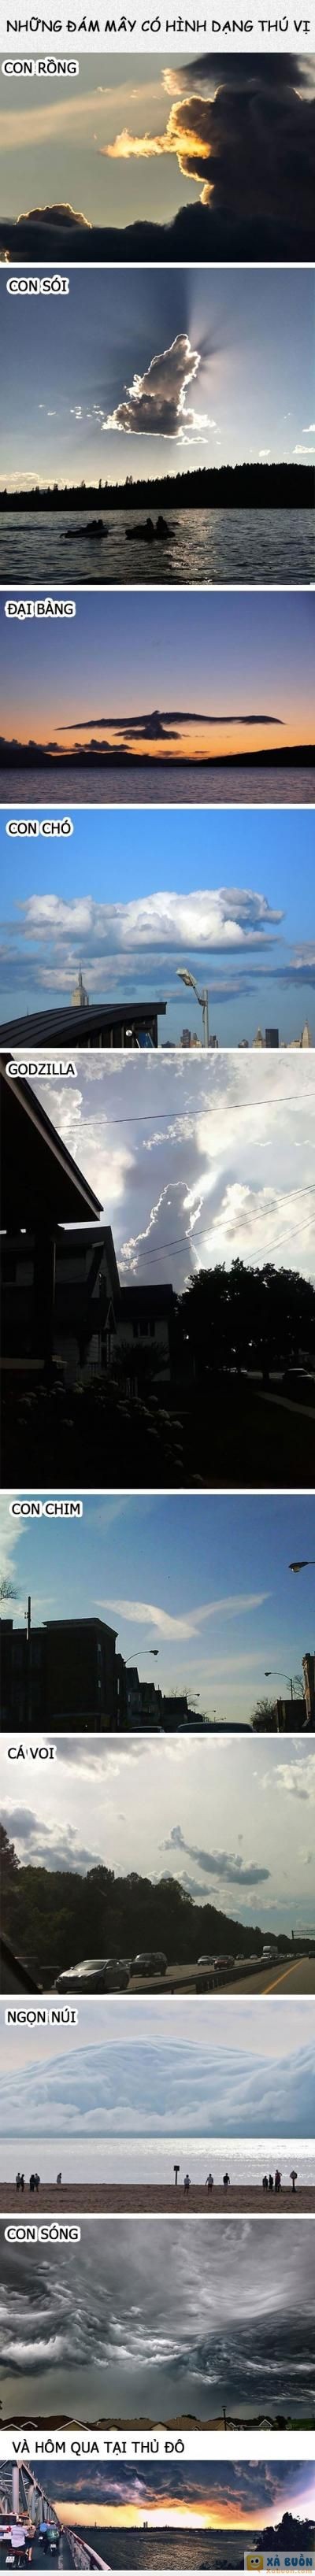  =)) <3   những đám mây có hình dạng thú vị (y)  <3  -  haivl